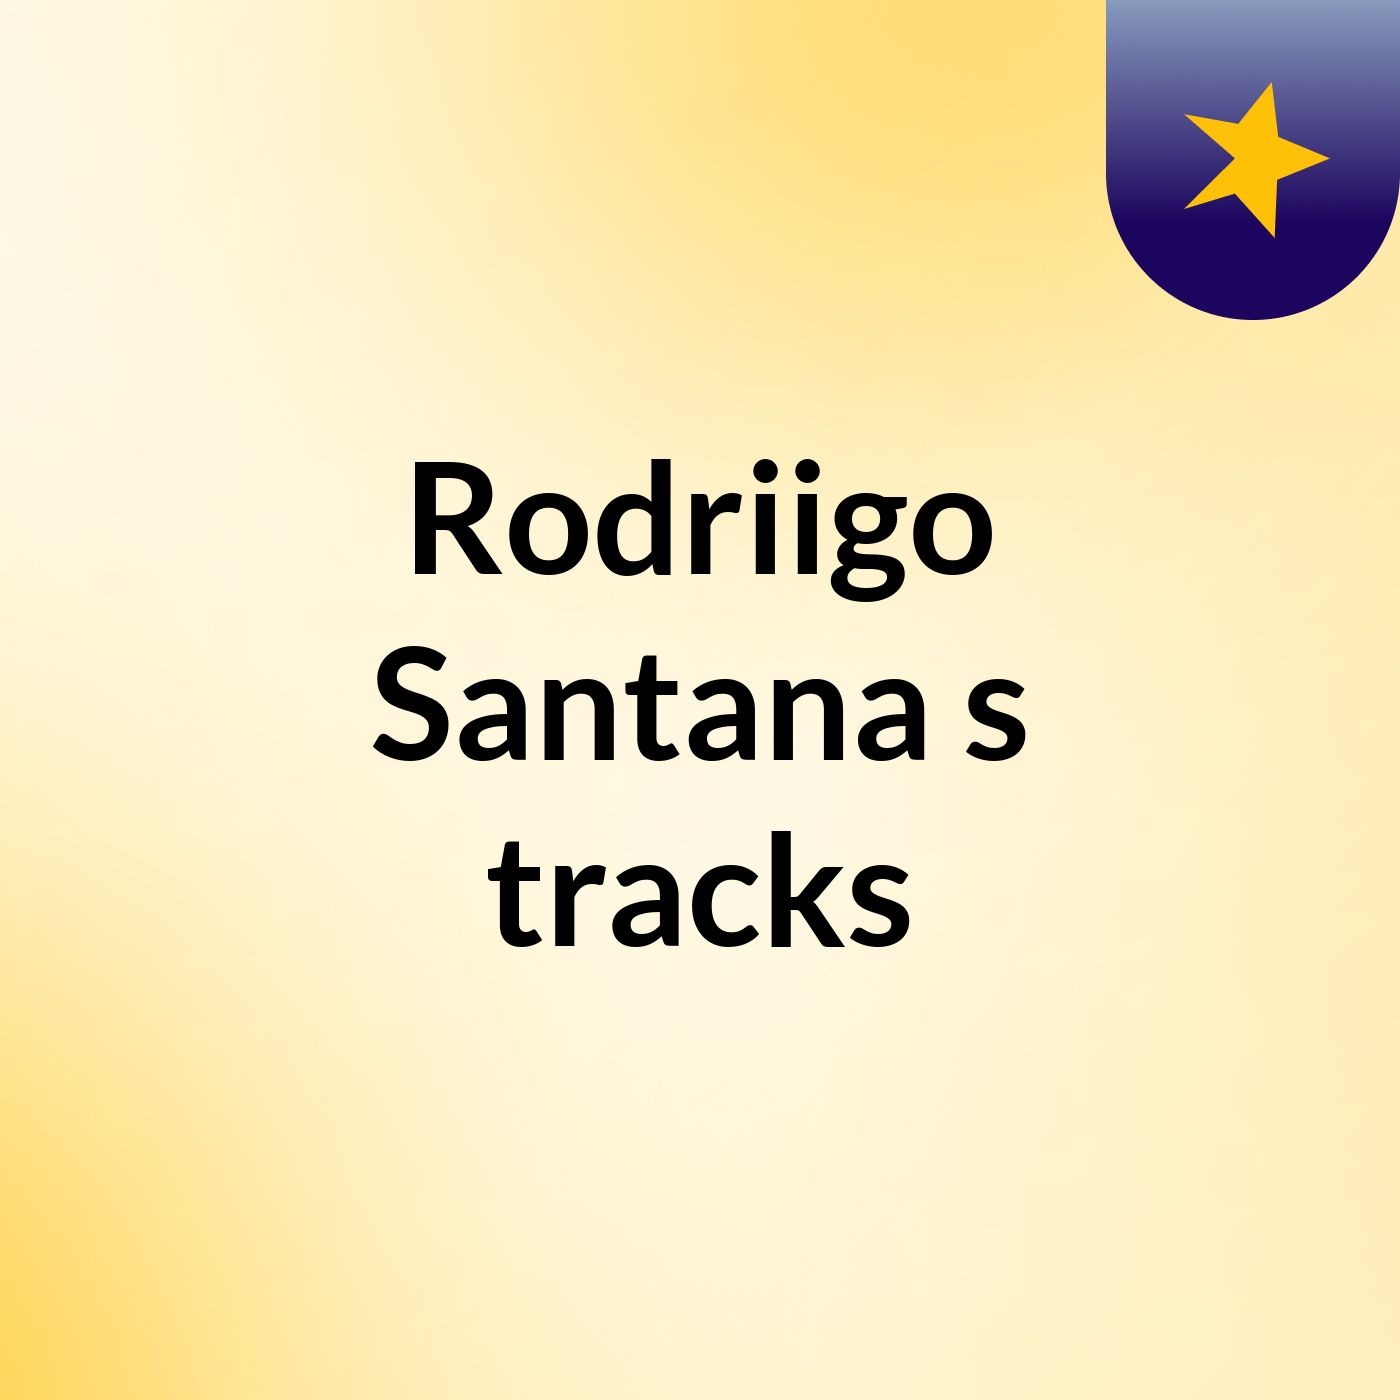 Rodriigo Santana's tracks